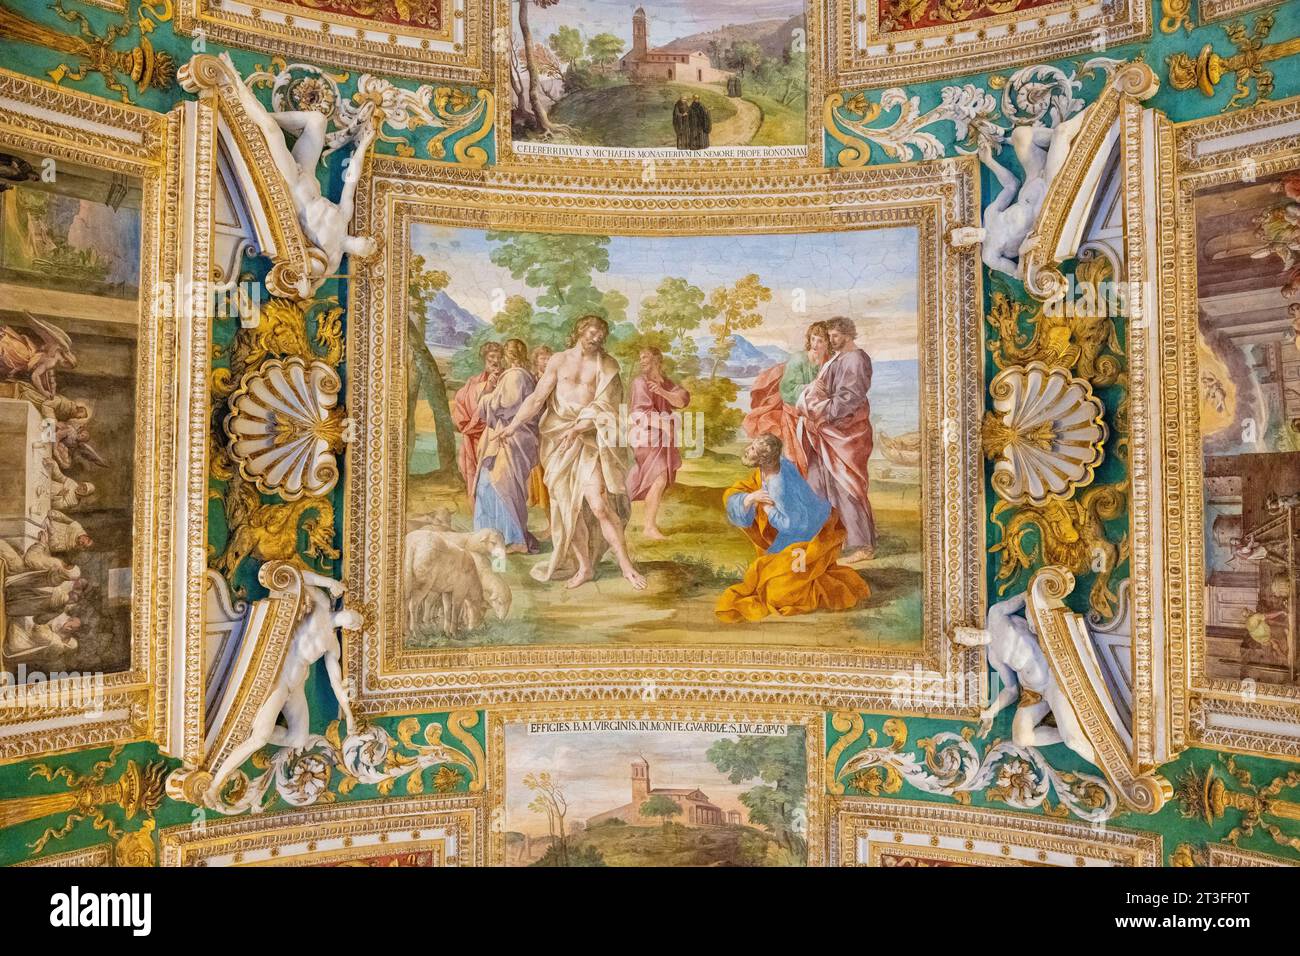 Italia, Lazio, Roma, città del Vaticano dichiarata Patrimonio dell'Umanità dall'UNESCO, Musei Vaticani, galleria di mappe geografiche Foto Stock